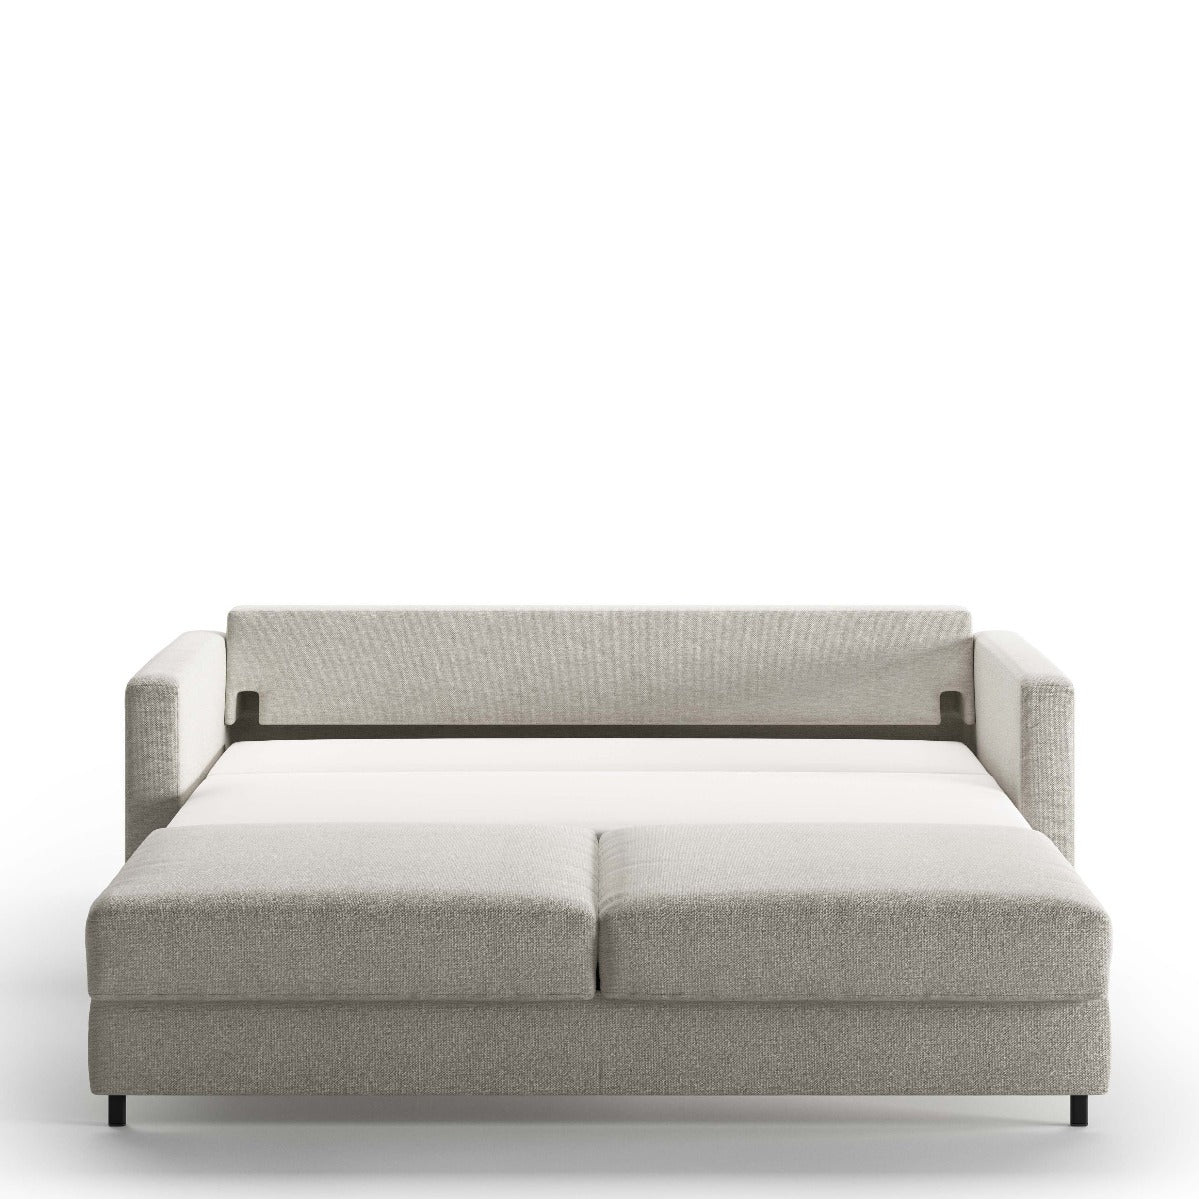 Luonto Furniture Fantasy King Sofa Sleeper - Fun 496 - 217/6 Chrome